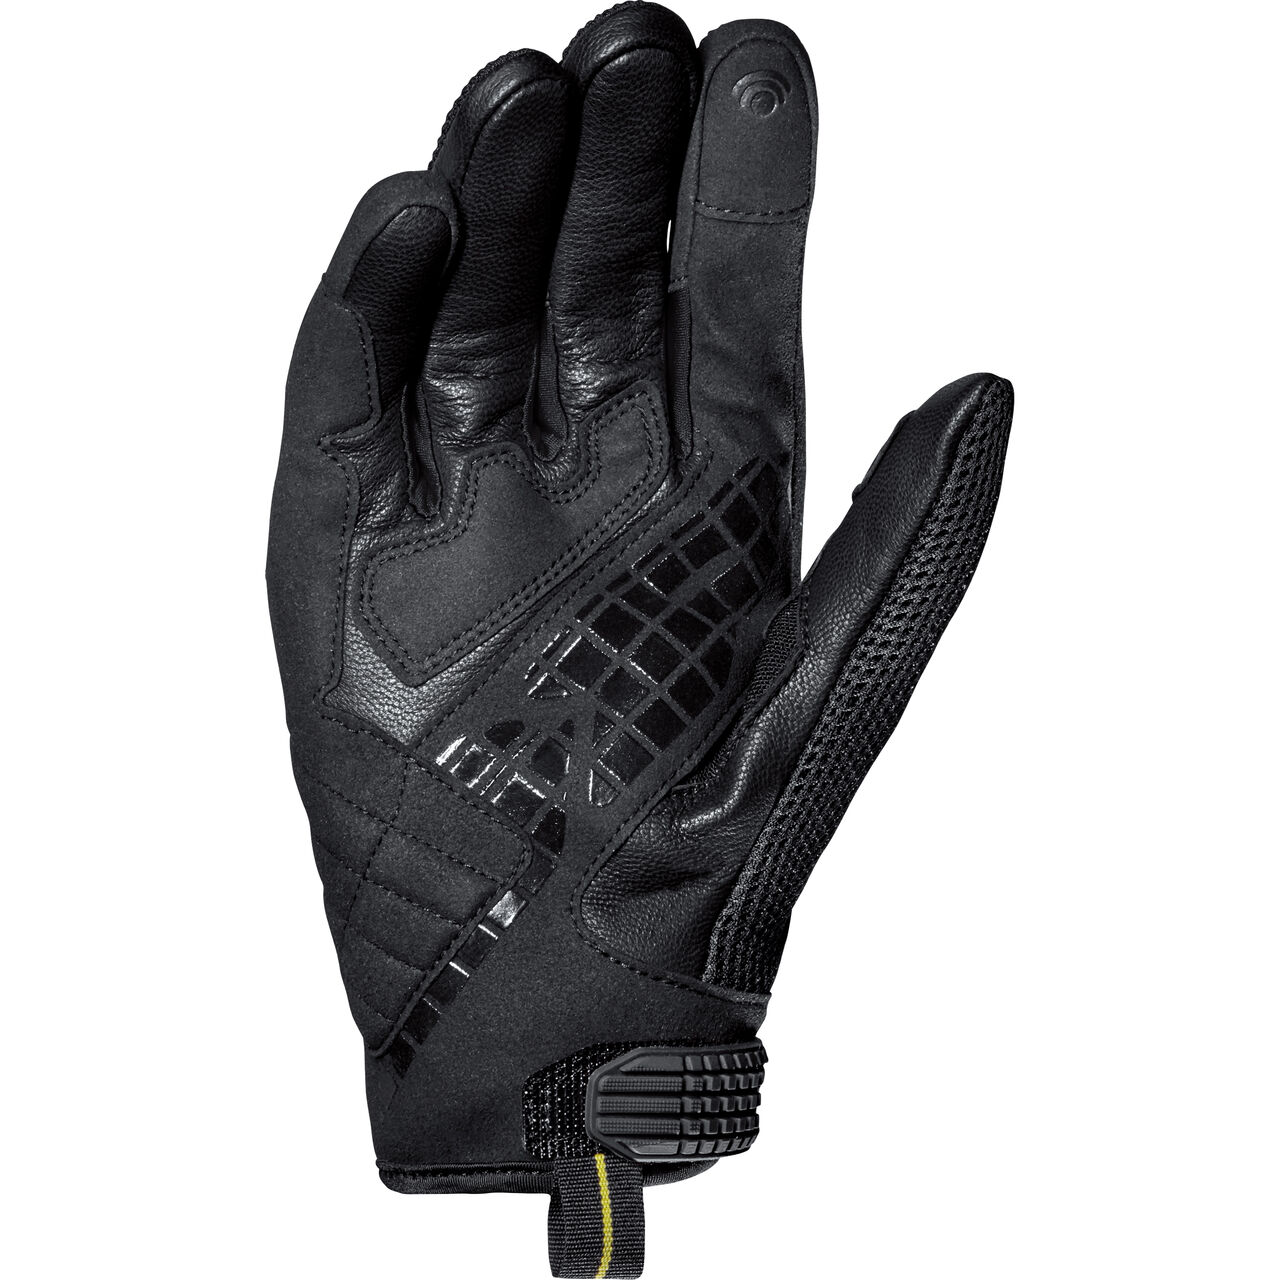 G-Carbon Handschuh weiß/schwarz